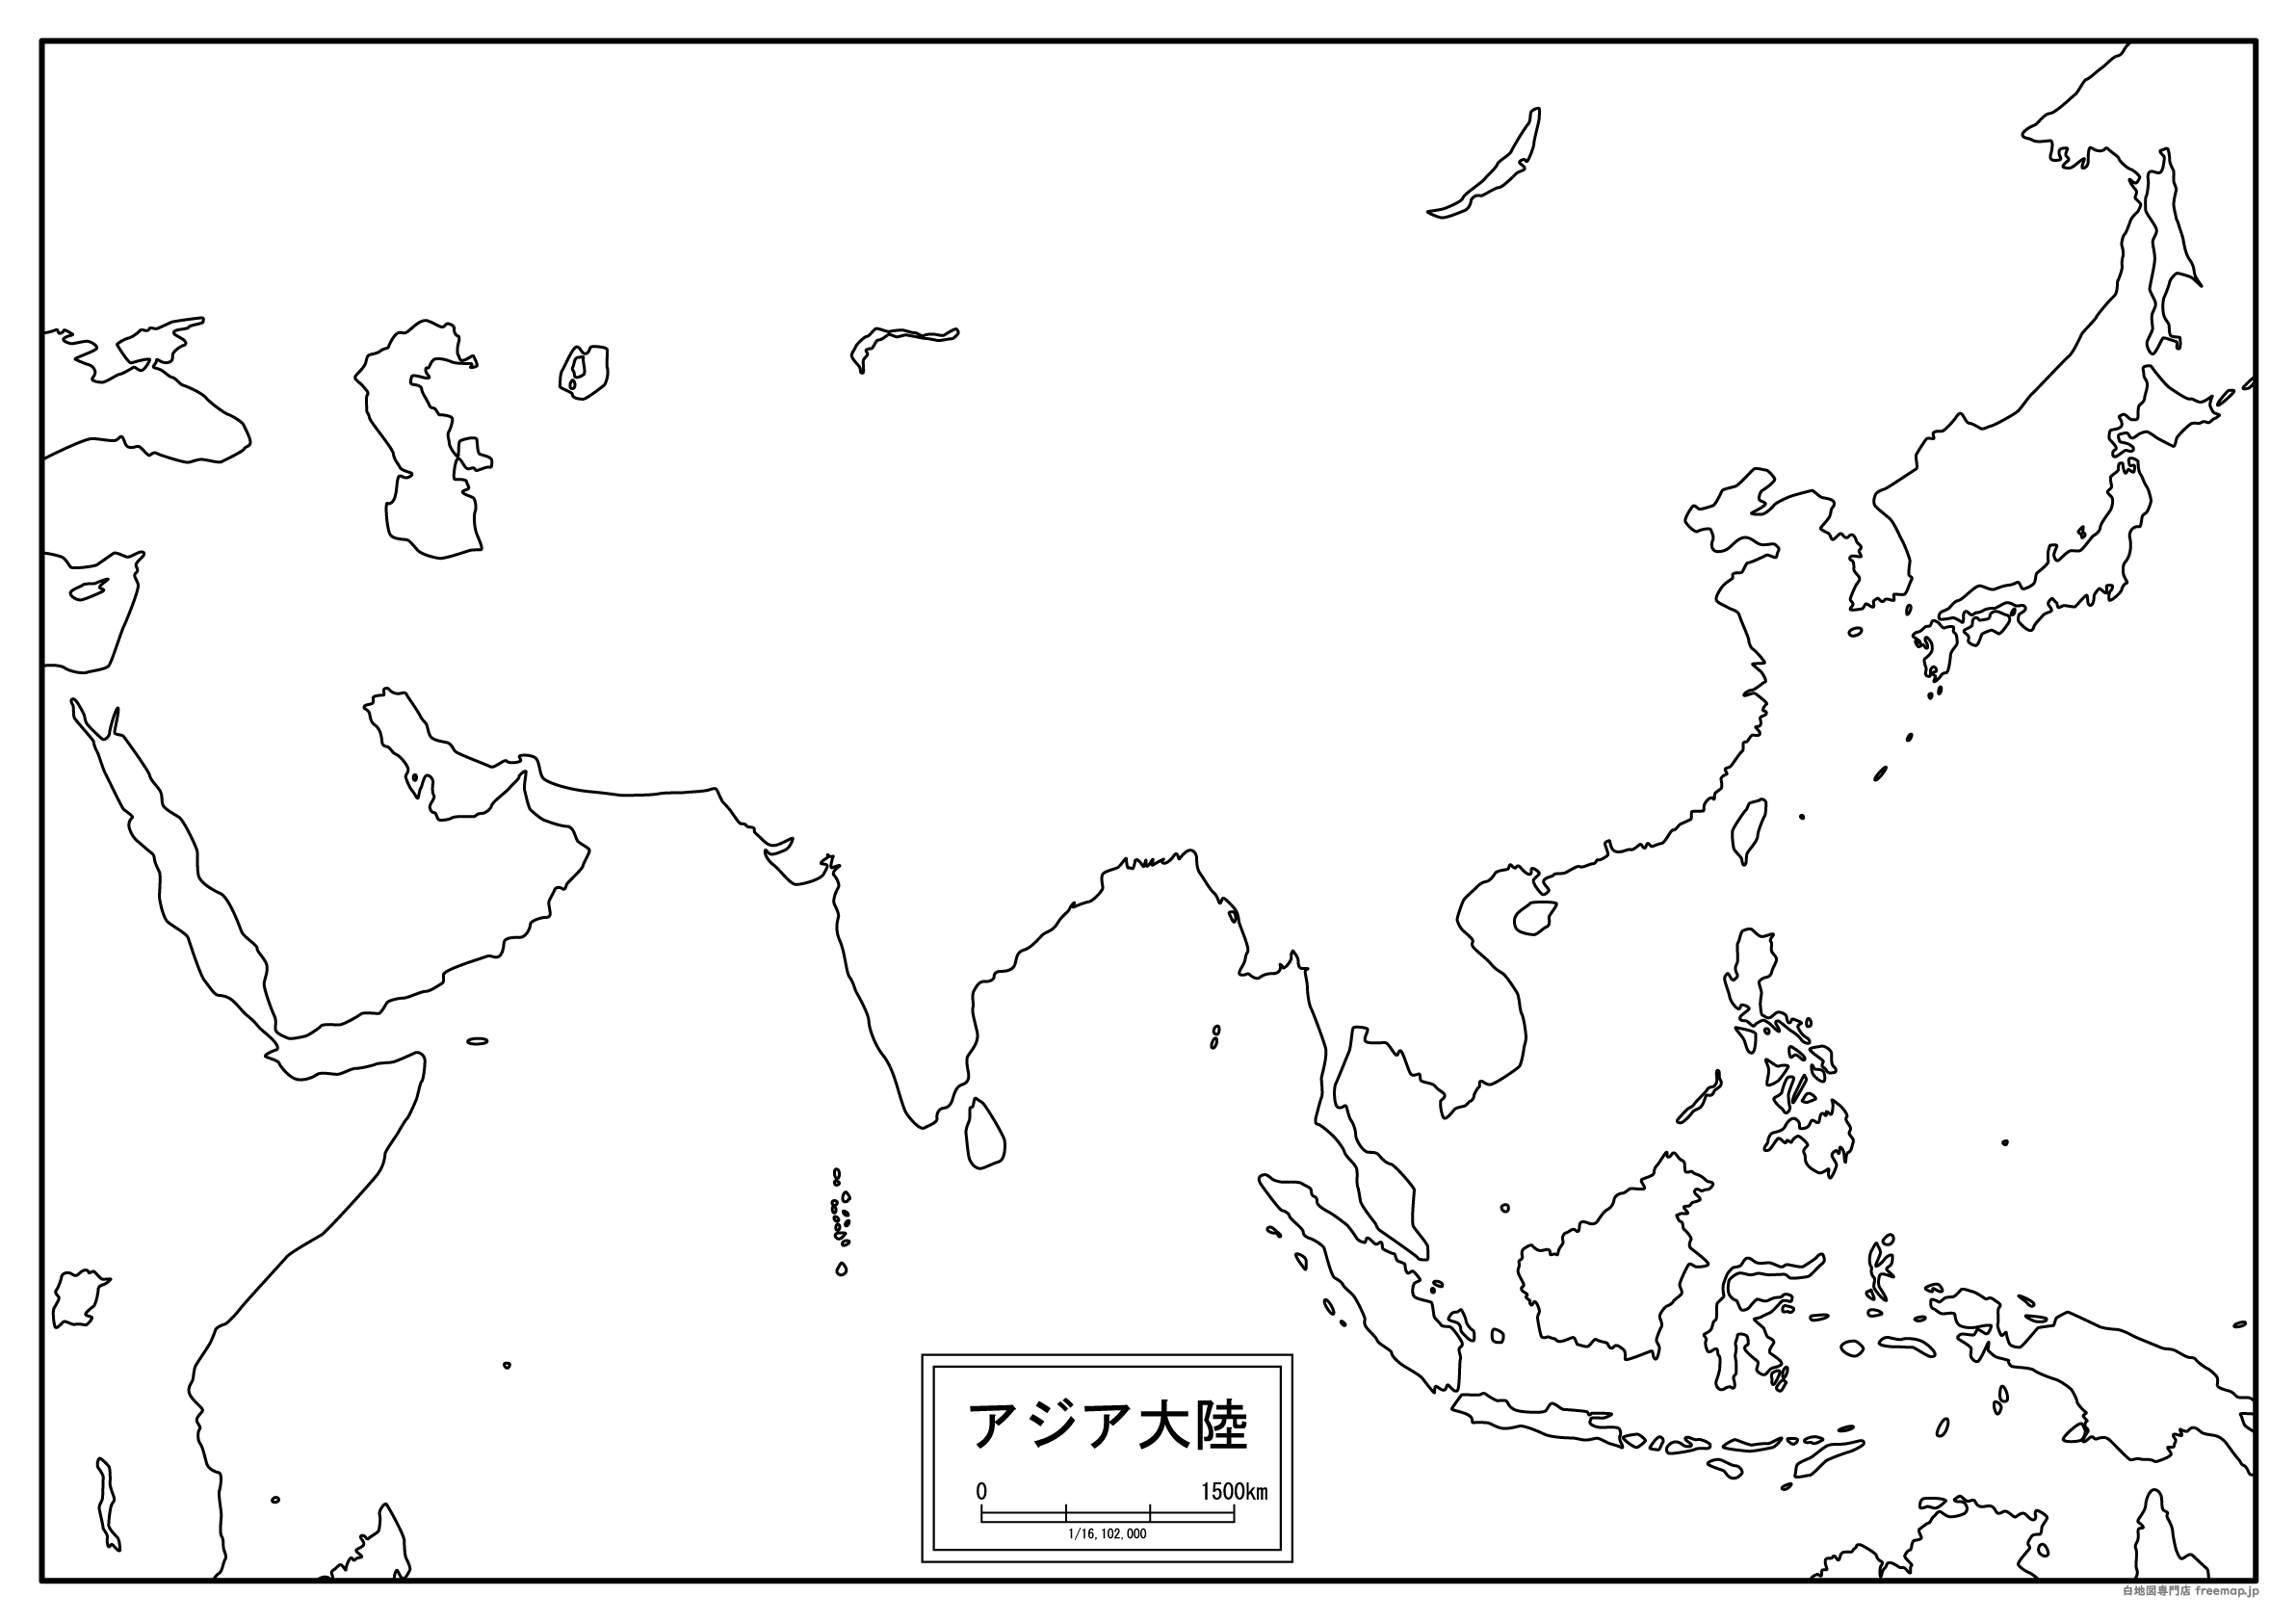 アジア大陸（拡大）のサムネイル